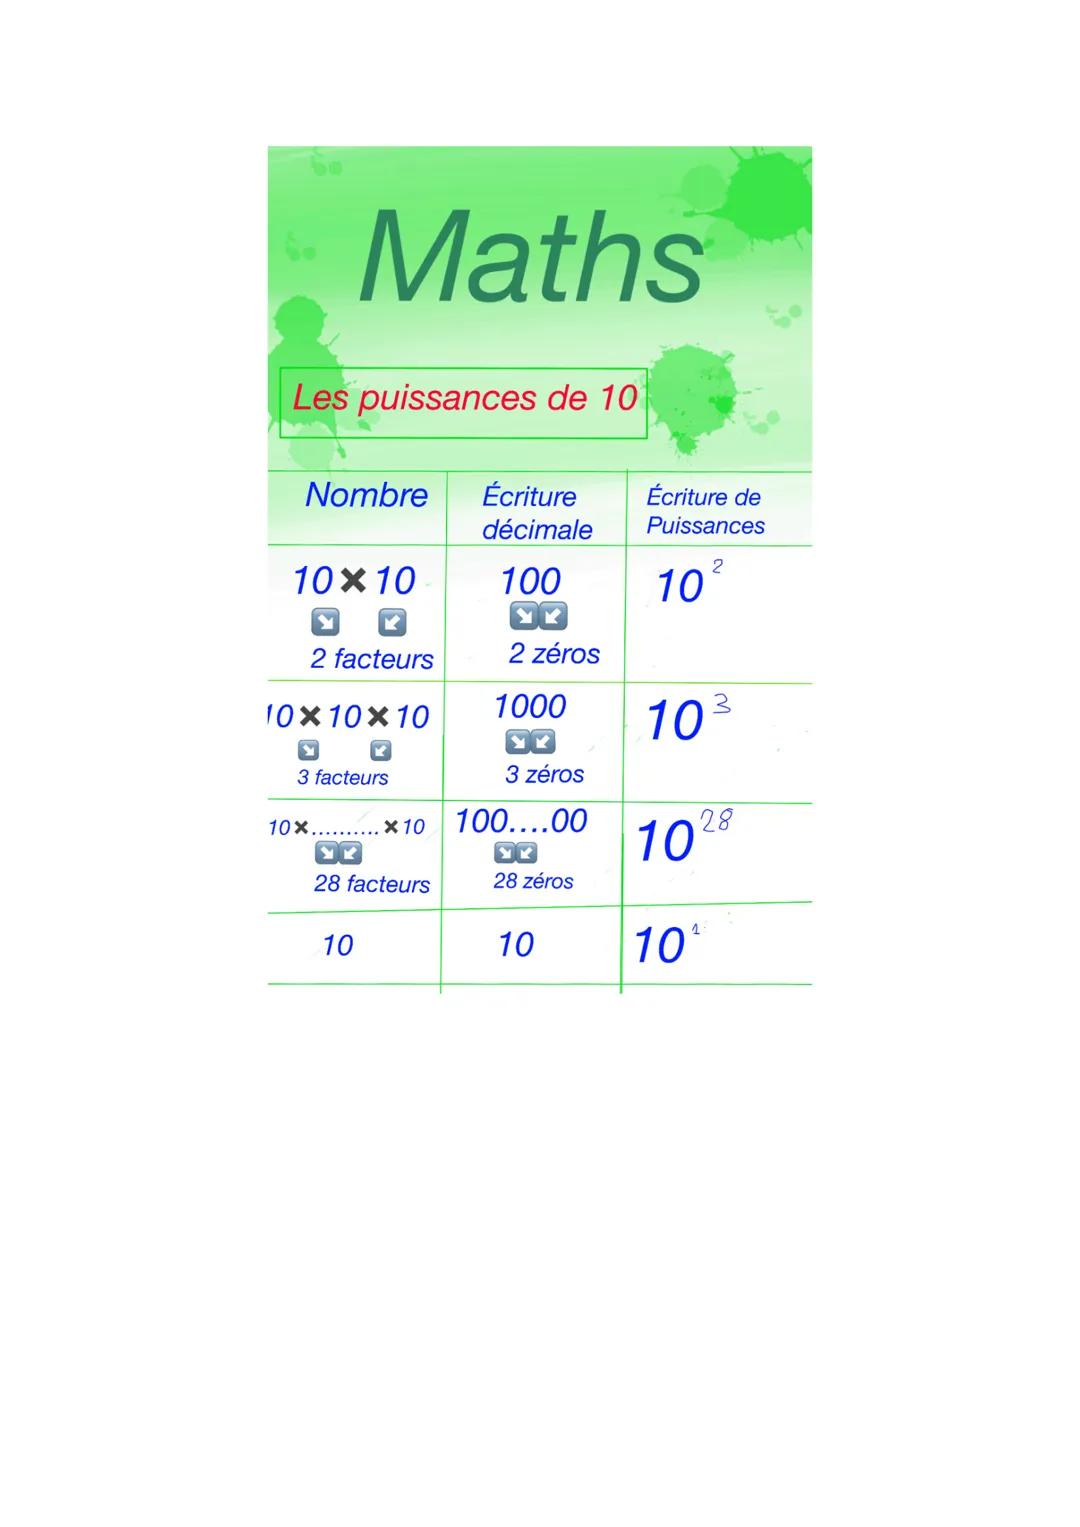 Les puissances de 10
Maths
Nombre Écriture
décimale
10×10
2 facteurs
10×10×10
Y
3 facteurs
10x..
10
x 10
YK
28 facteurs
100
DO
2 zéros
1000
